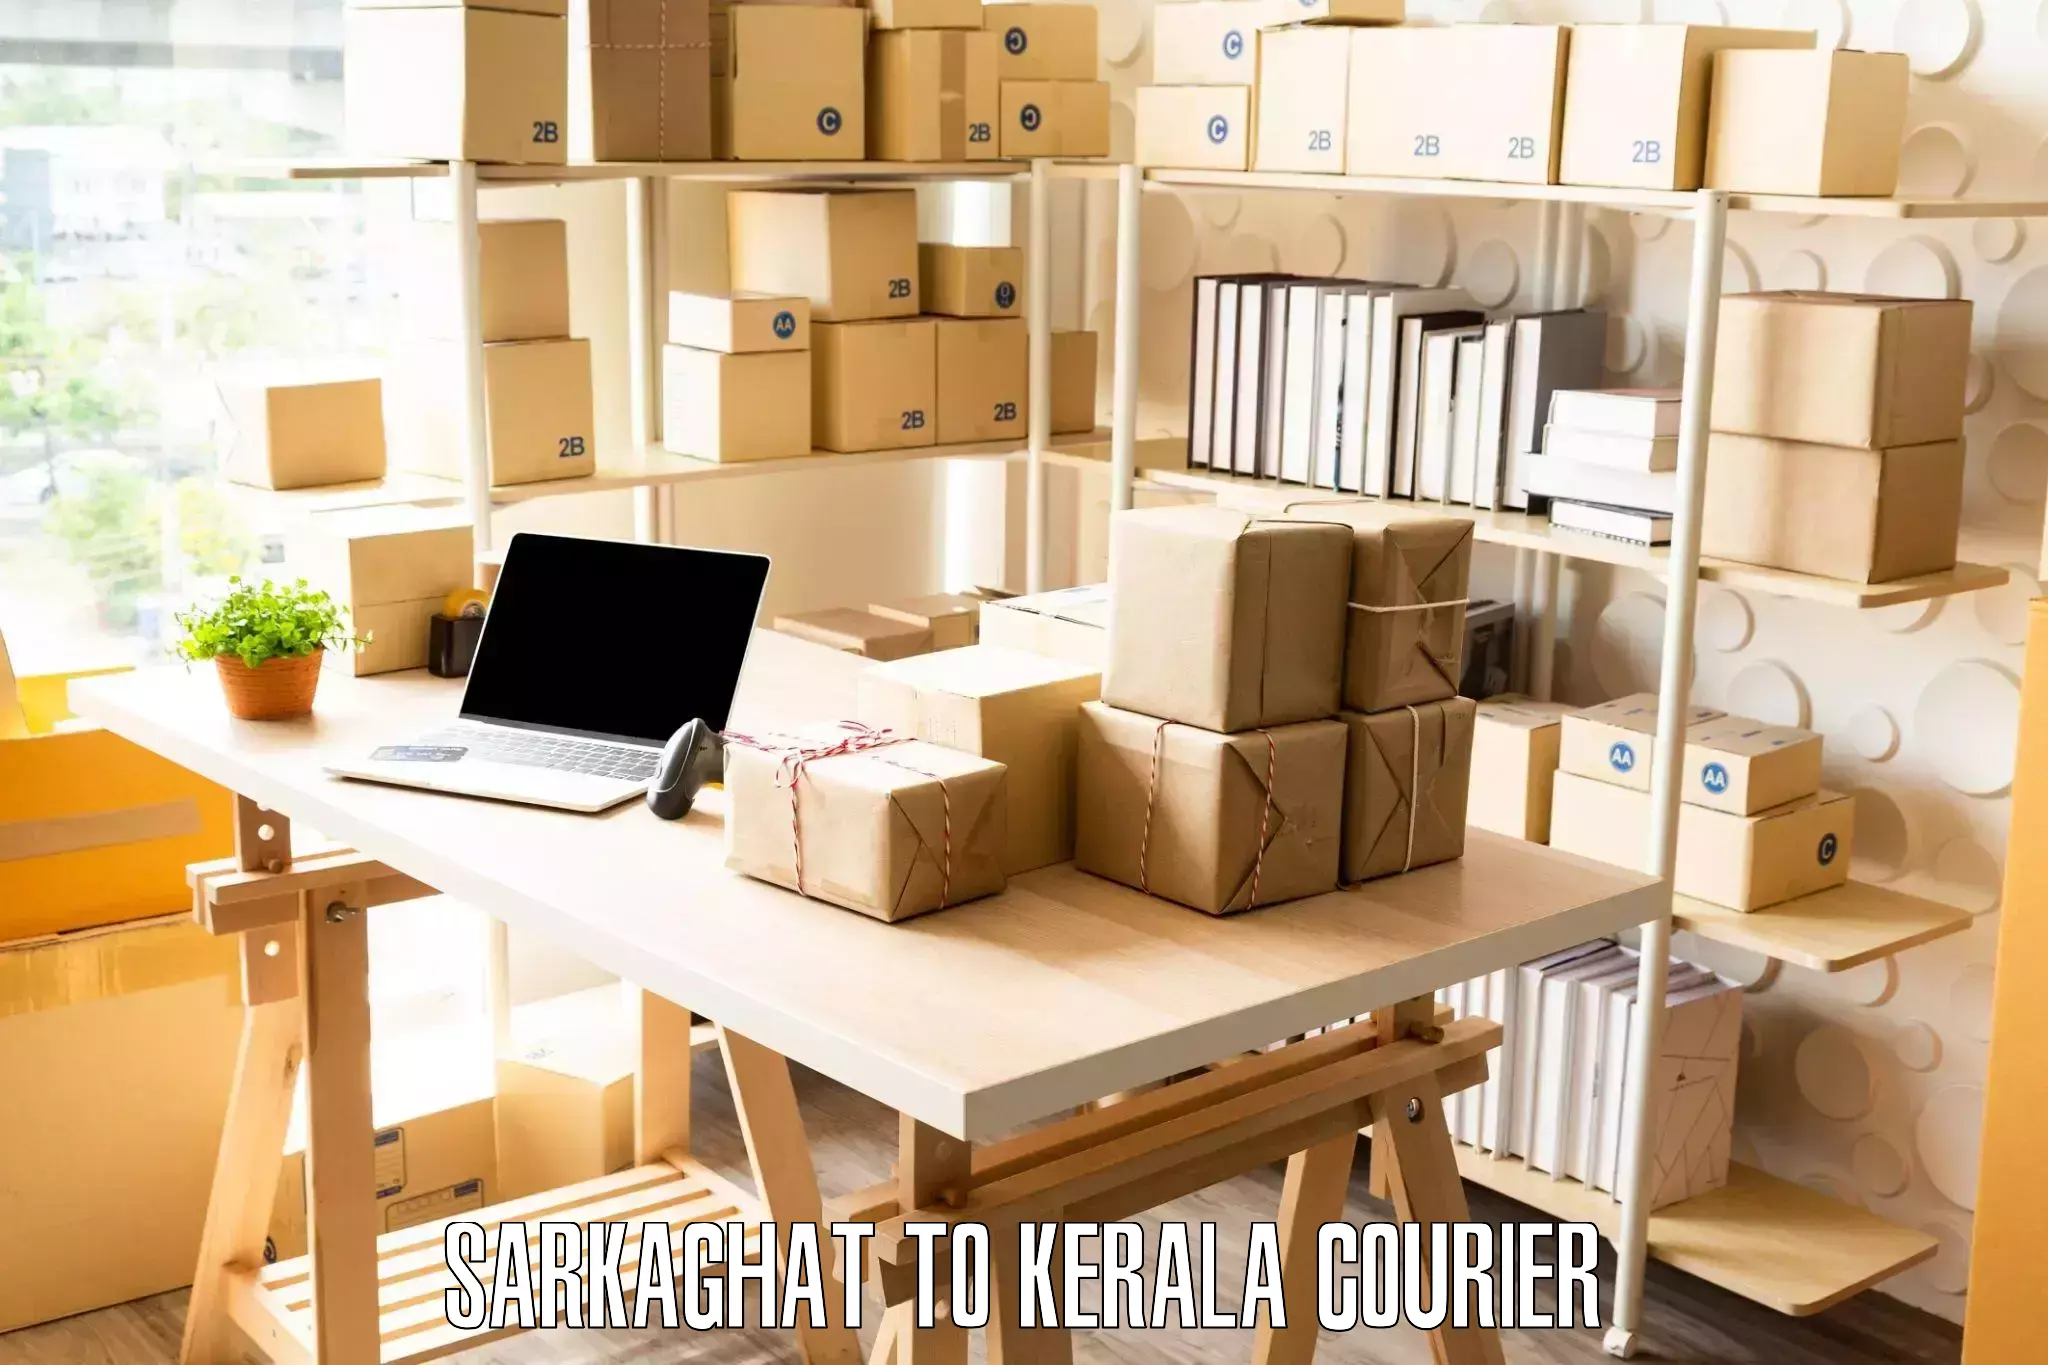 Skilled furniture transporters Sarkaghat to Kakkayam